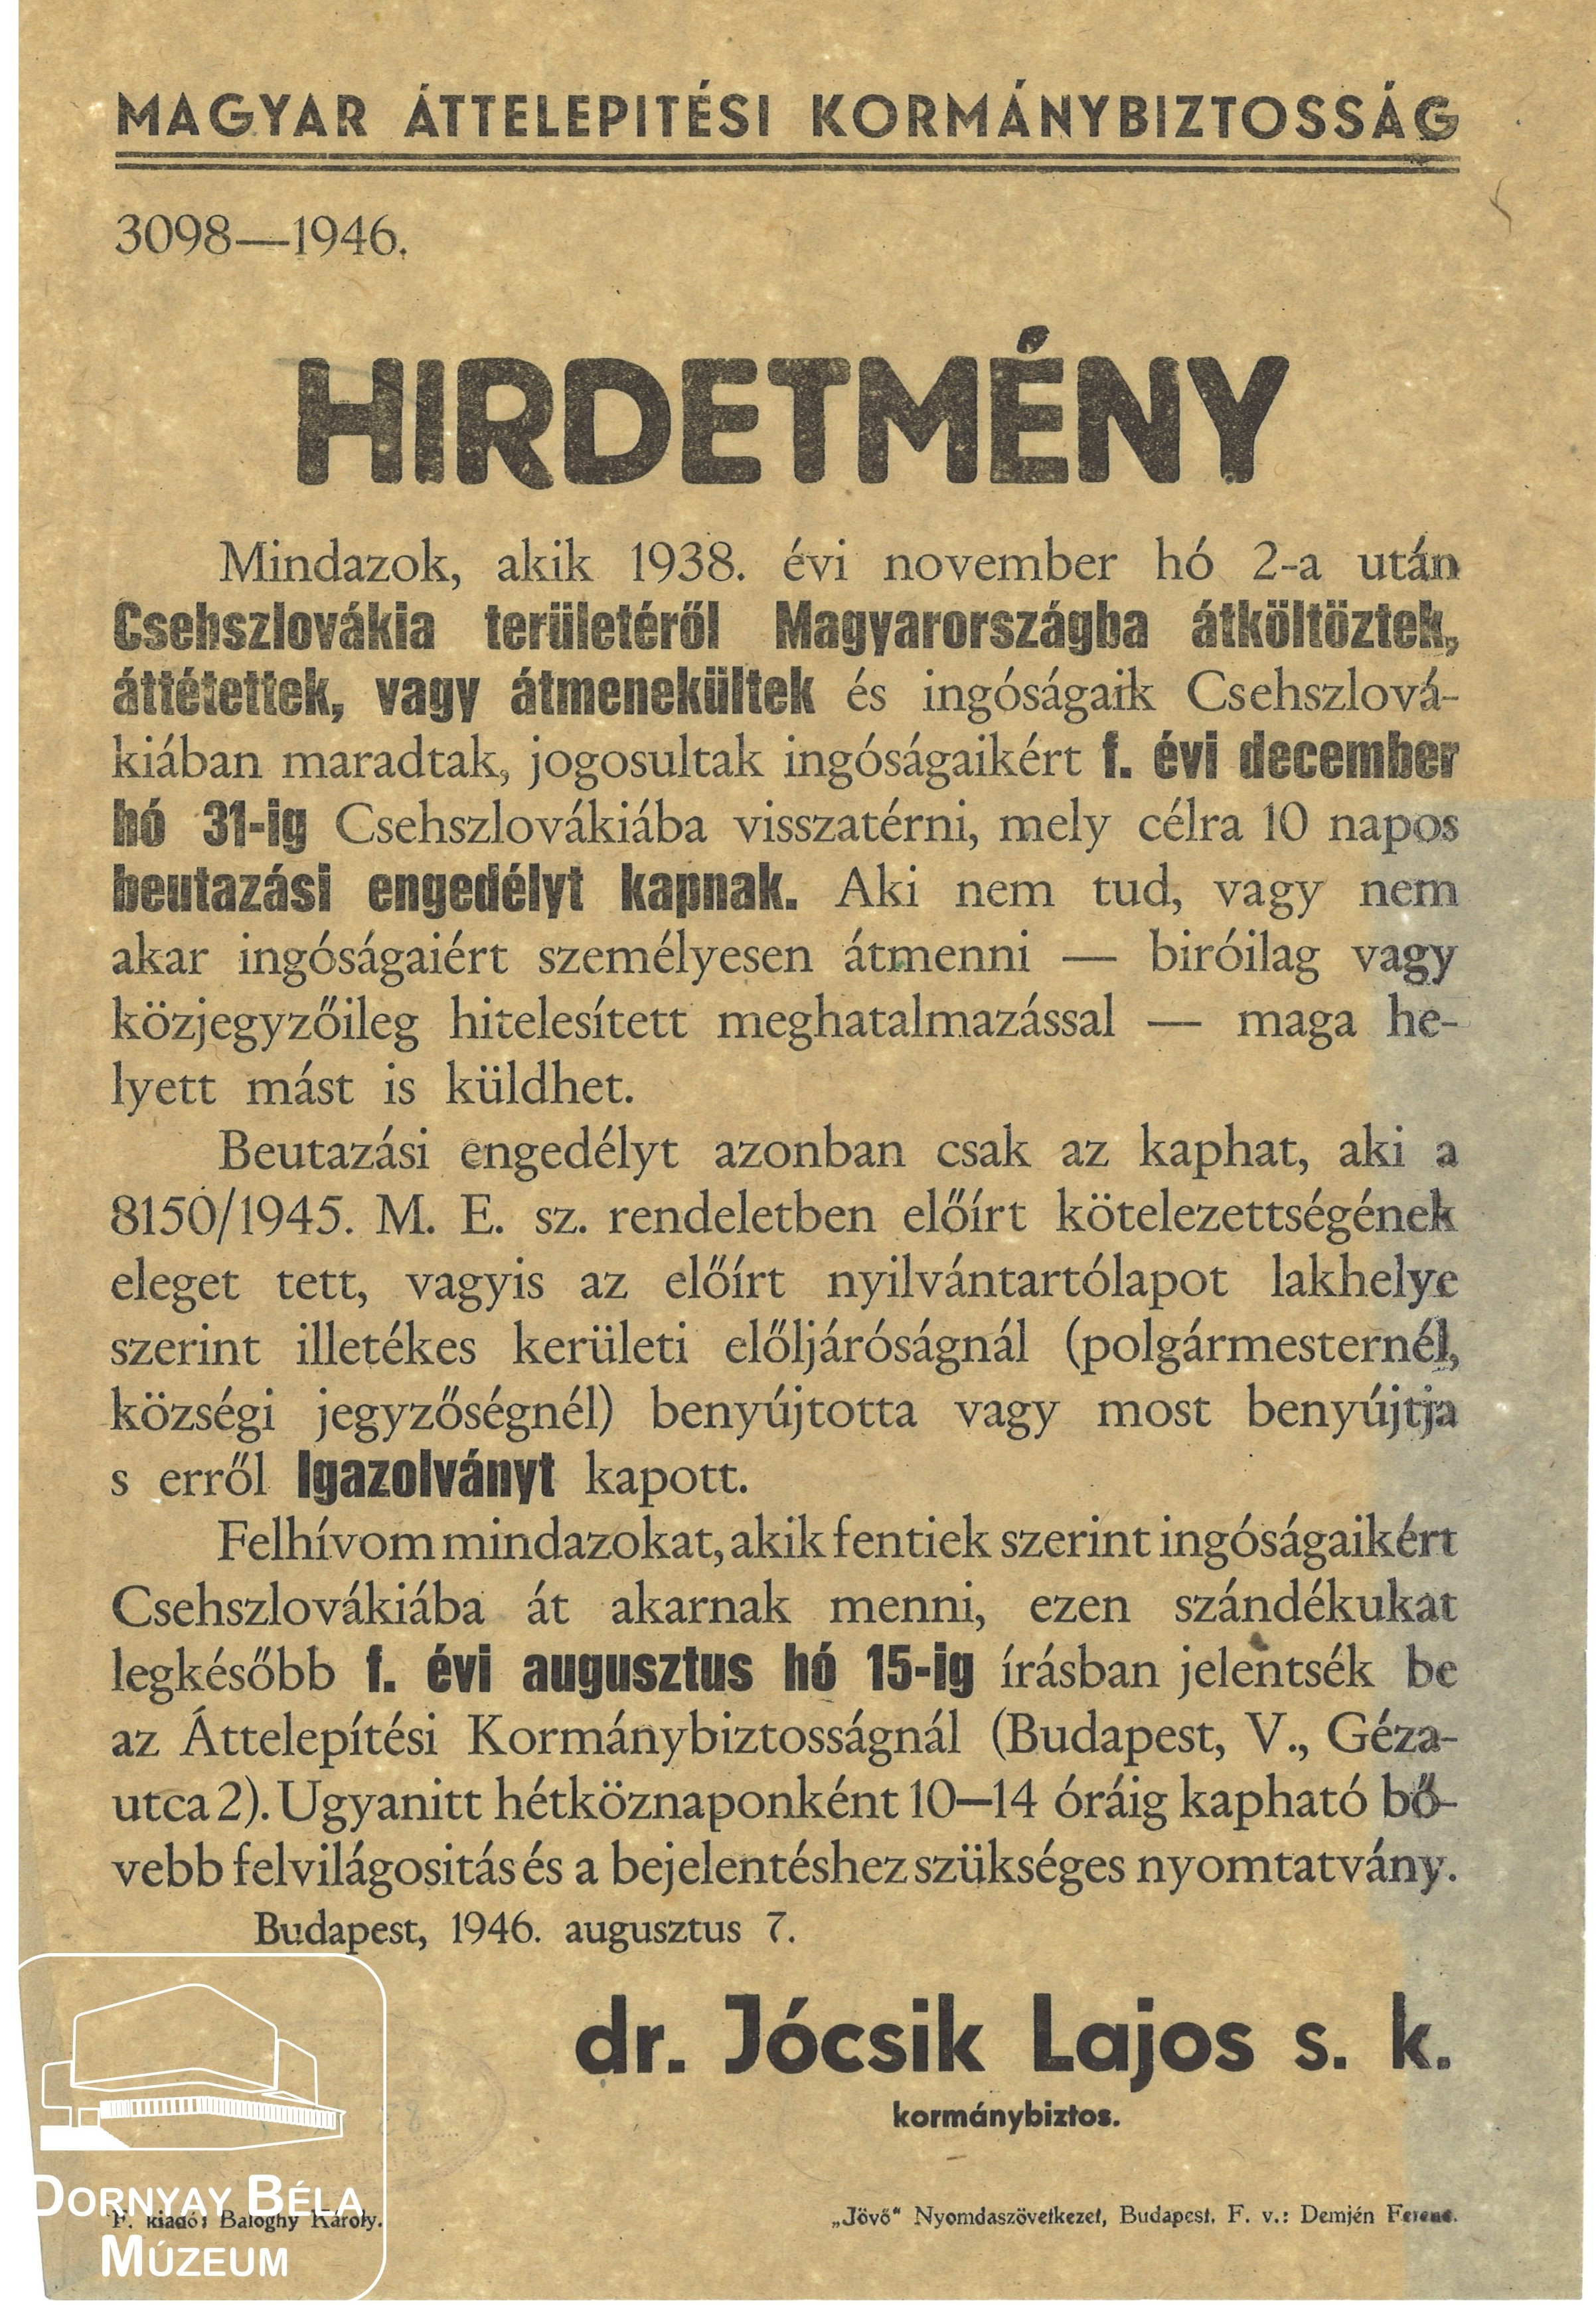 Magyar Áttelepítési kormánybiztosság hirdetménye (Dornyay Béla Múzeum, Salgótarján CC BY-NC-SA)